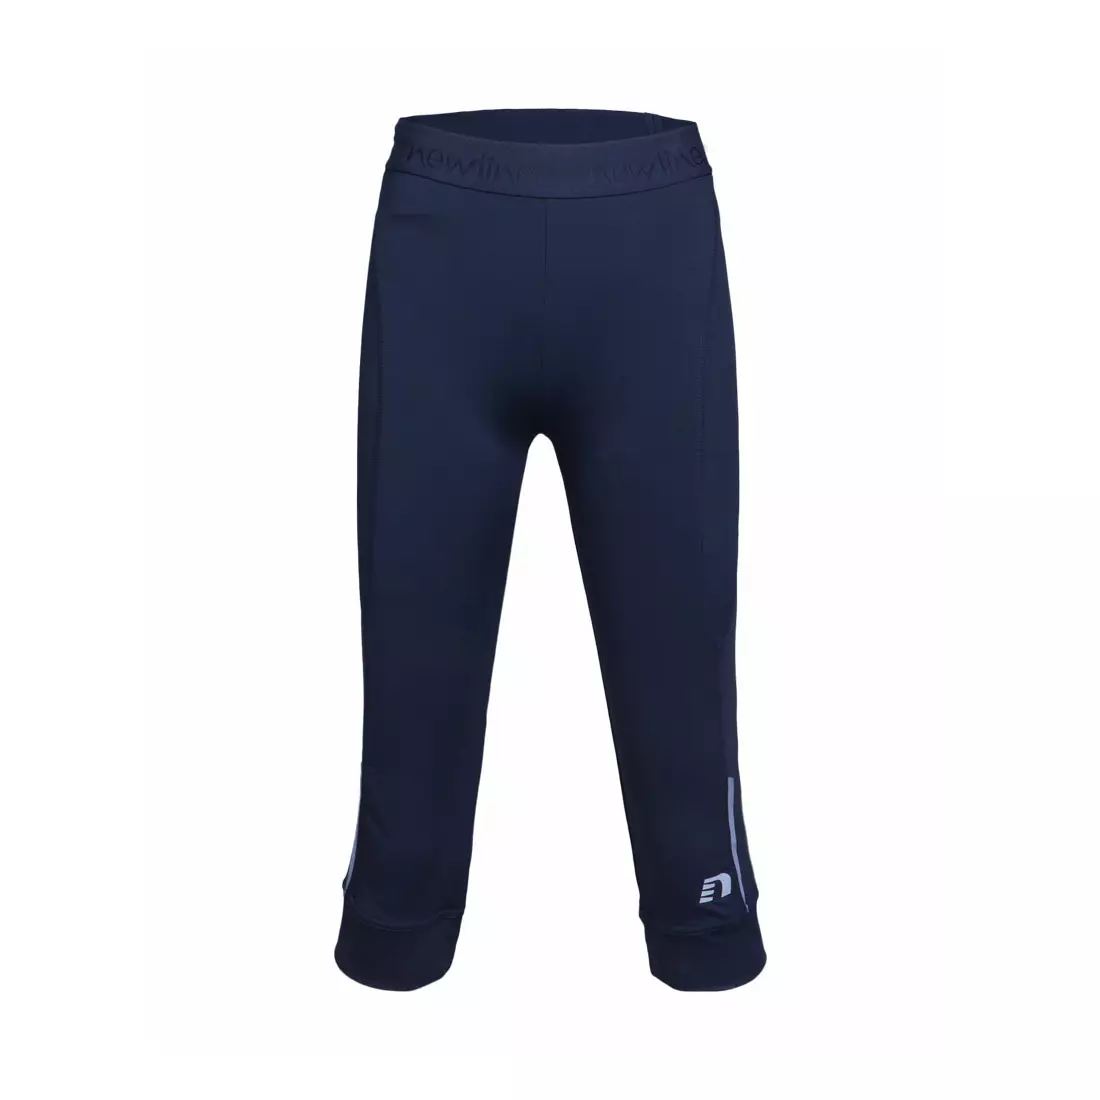 NEWLINE IMOTION KOLENAČKY 10299-275 - dámské běžecké šortky, barva: tmavě modrá